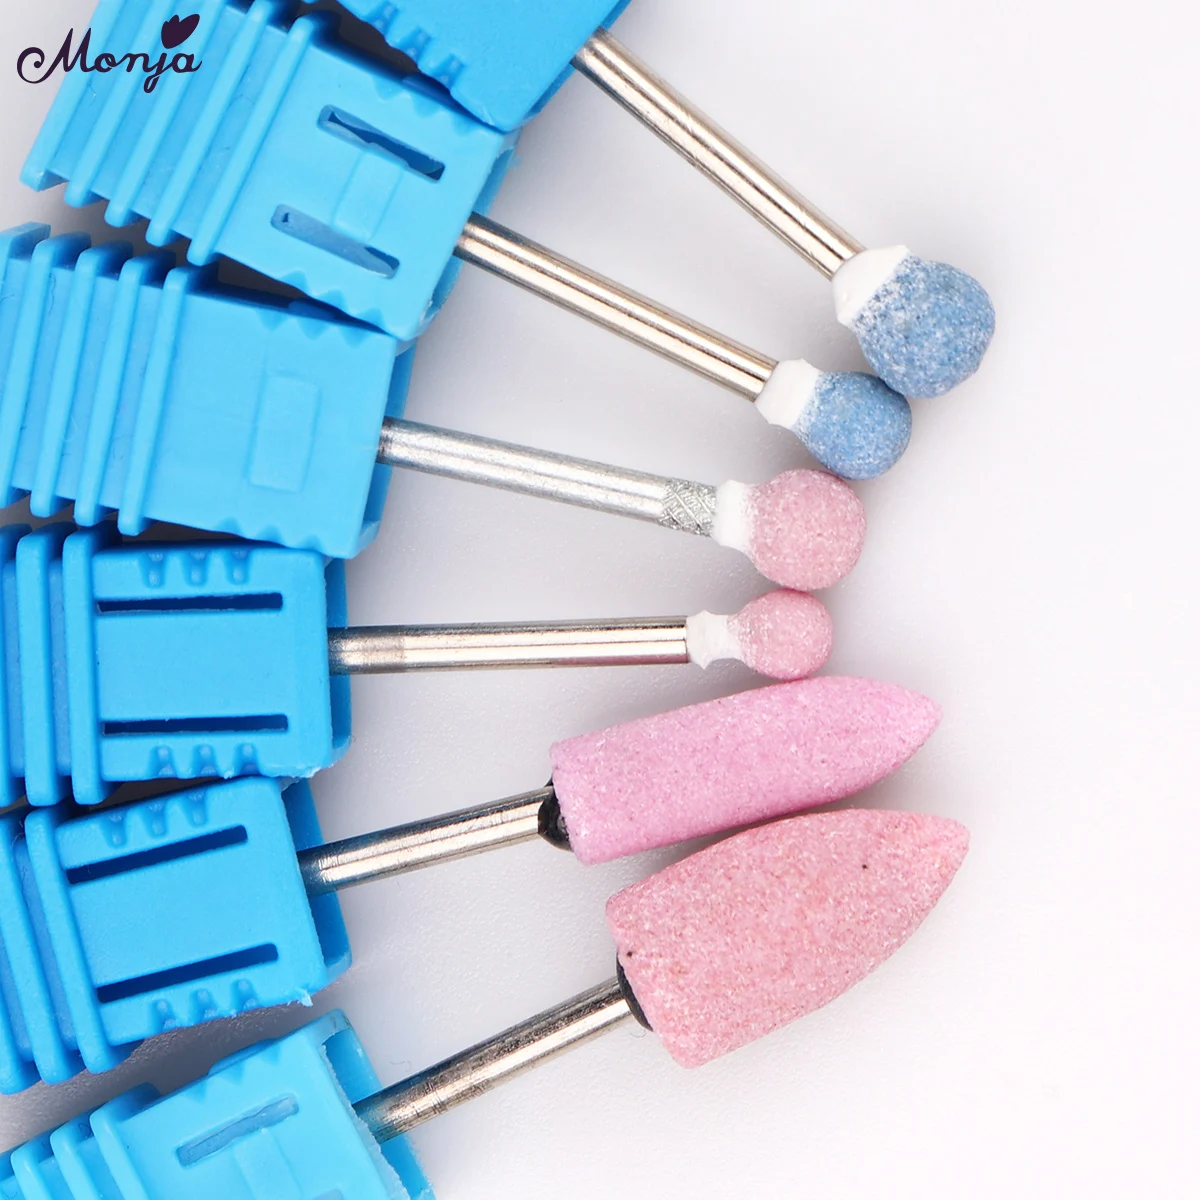 Monja 7 типов сверло для ногтей роторный шлифовальный фрезерный резак для очистки кутикулы для маникюра Электрический станок аксессуары для дизайна ногтей